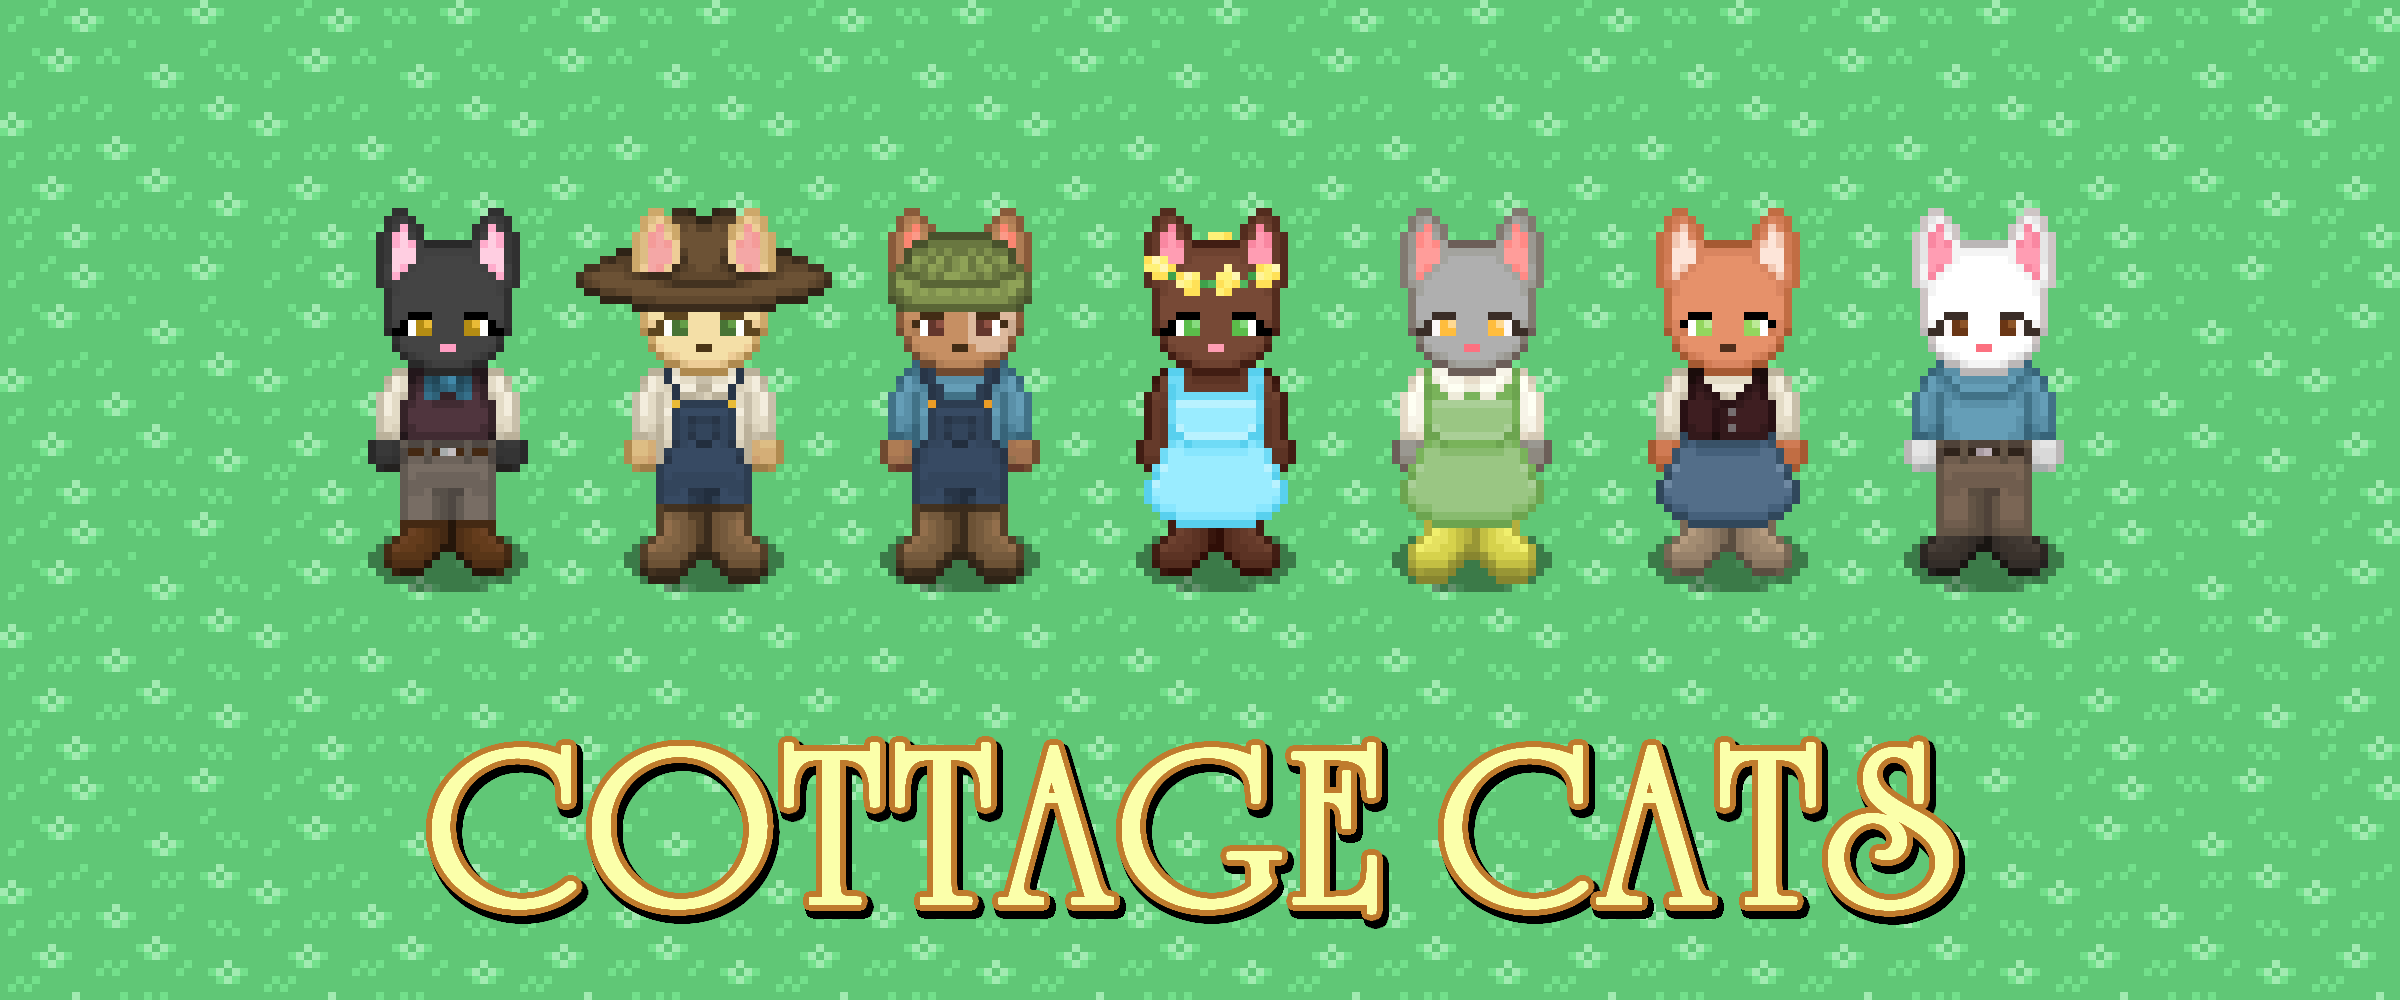 Cottage Cats || Pixel Asset Pack